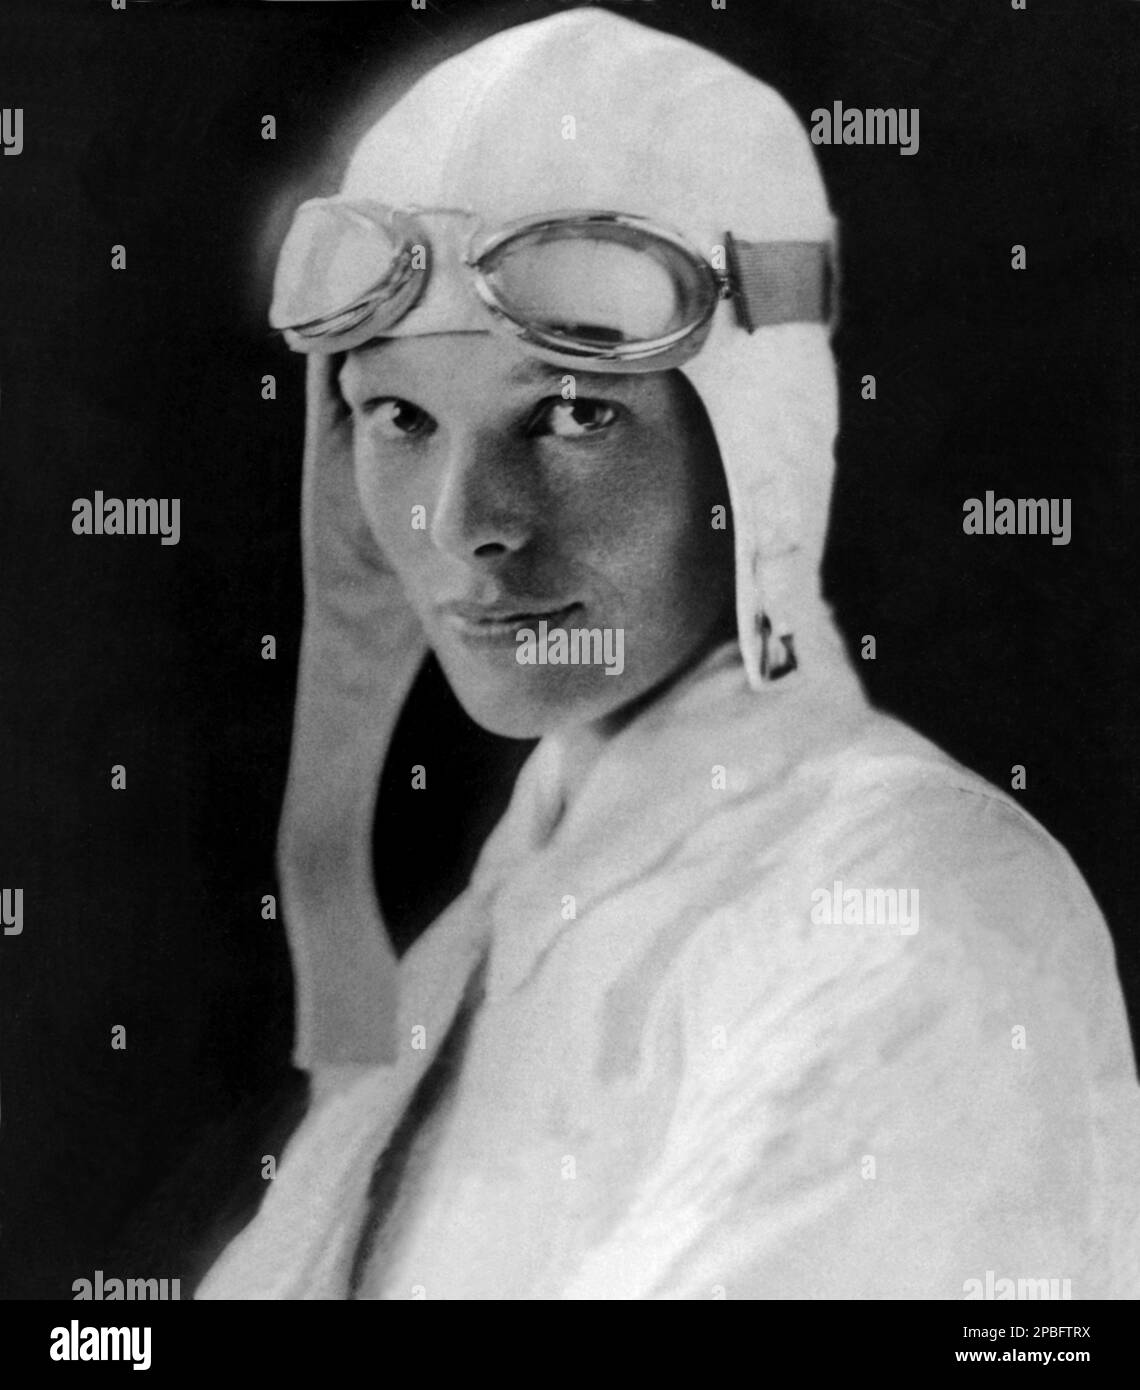 1926 Ca , USA : Porträts der berühmtesten Pilotenfrau AMELIA EARHART ( 1897 - 1937 ) . Earhart war die erste Frau, die das Distinguished Flying Cross erhielt, das sie als erste Flugzeugin erhielt, die allein über den Atlantischen Ozean flog. Sie stellte viele andere Rekorde auf, schrieb Bestsellerbücher über ihre Flugerfahrungen und war maßgeblich an der Gründung der neunundneunzig, einer Organisation für Piloteninnen. Während eines Versuchs, 1937 einen Rundflug um den Globus zu machen, verschwand Earhart über dem zentralen Pazifik nahe Howland Island. Faszination für ihr Leben Stockfoto